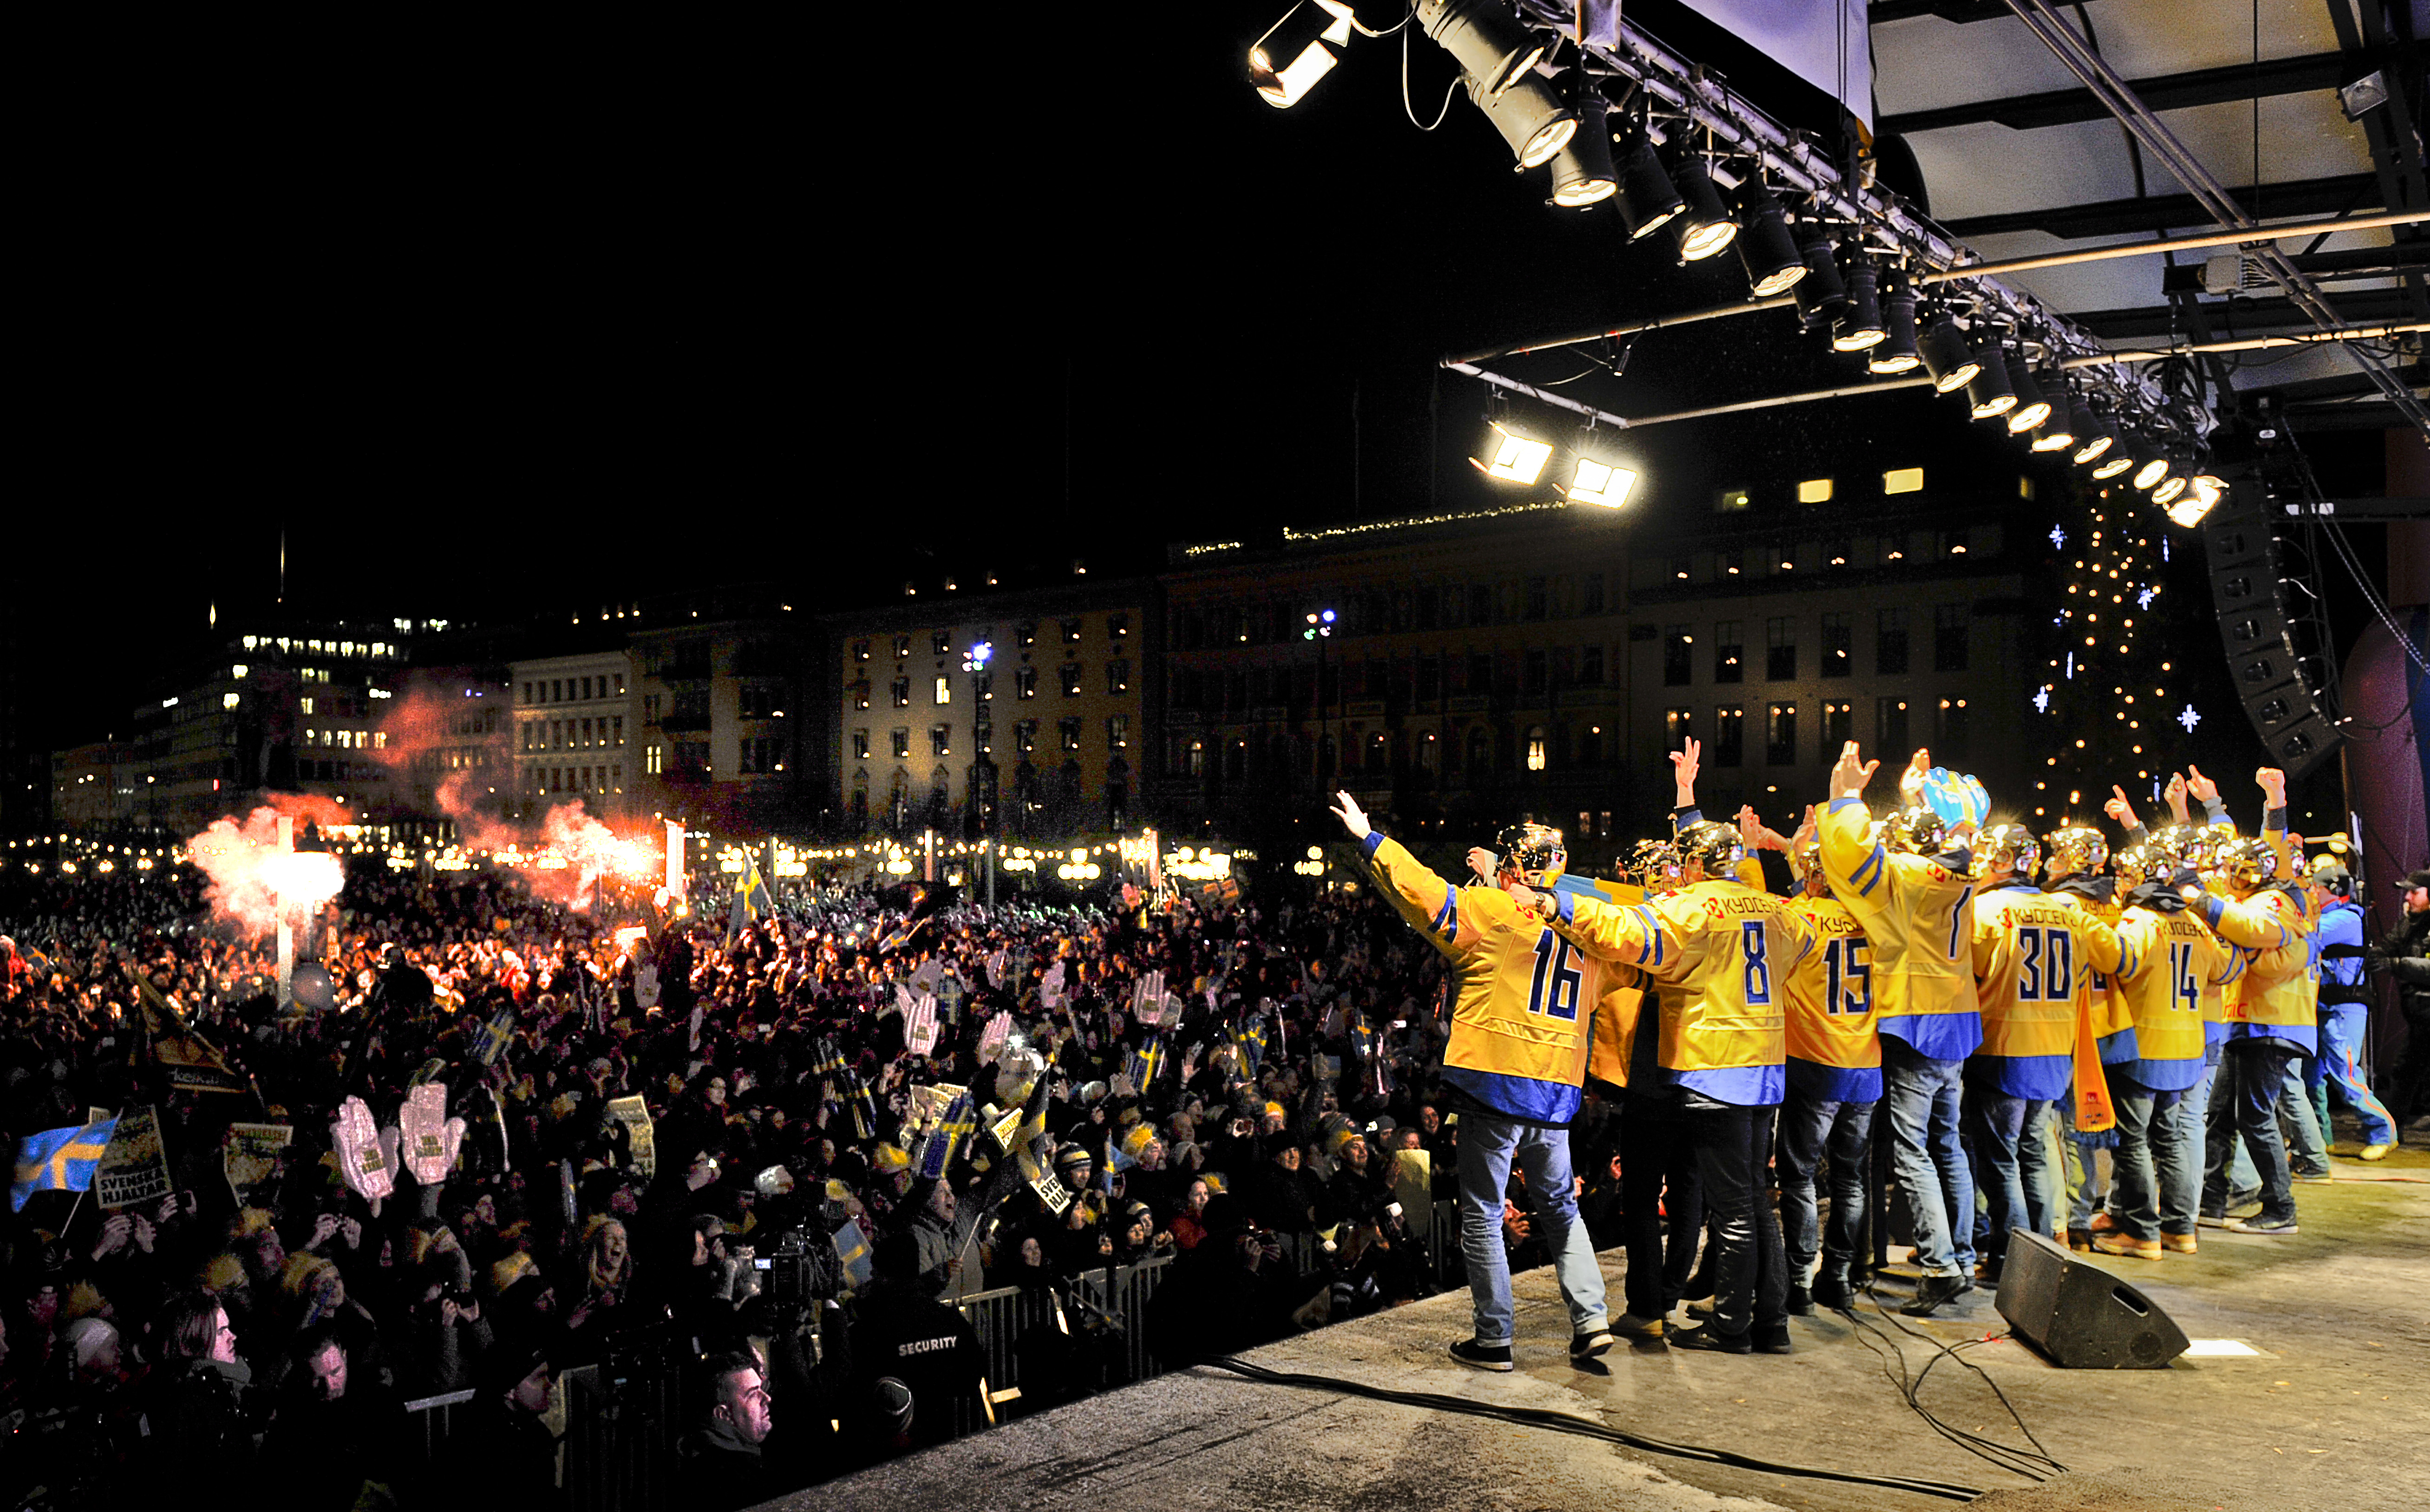 "VM-guld, VM-guld, VM-guuuuld!", sjöng spelarna tillsammans med de euforiska fansen.